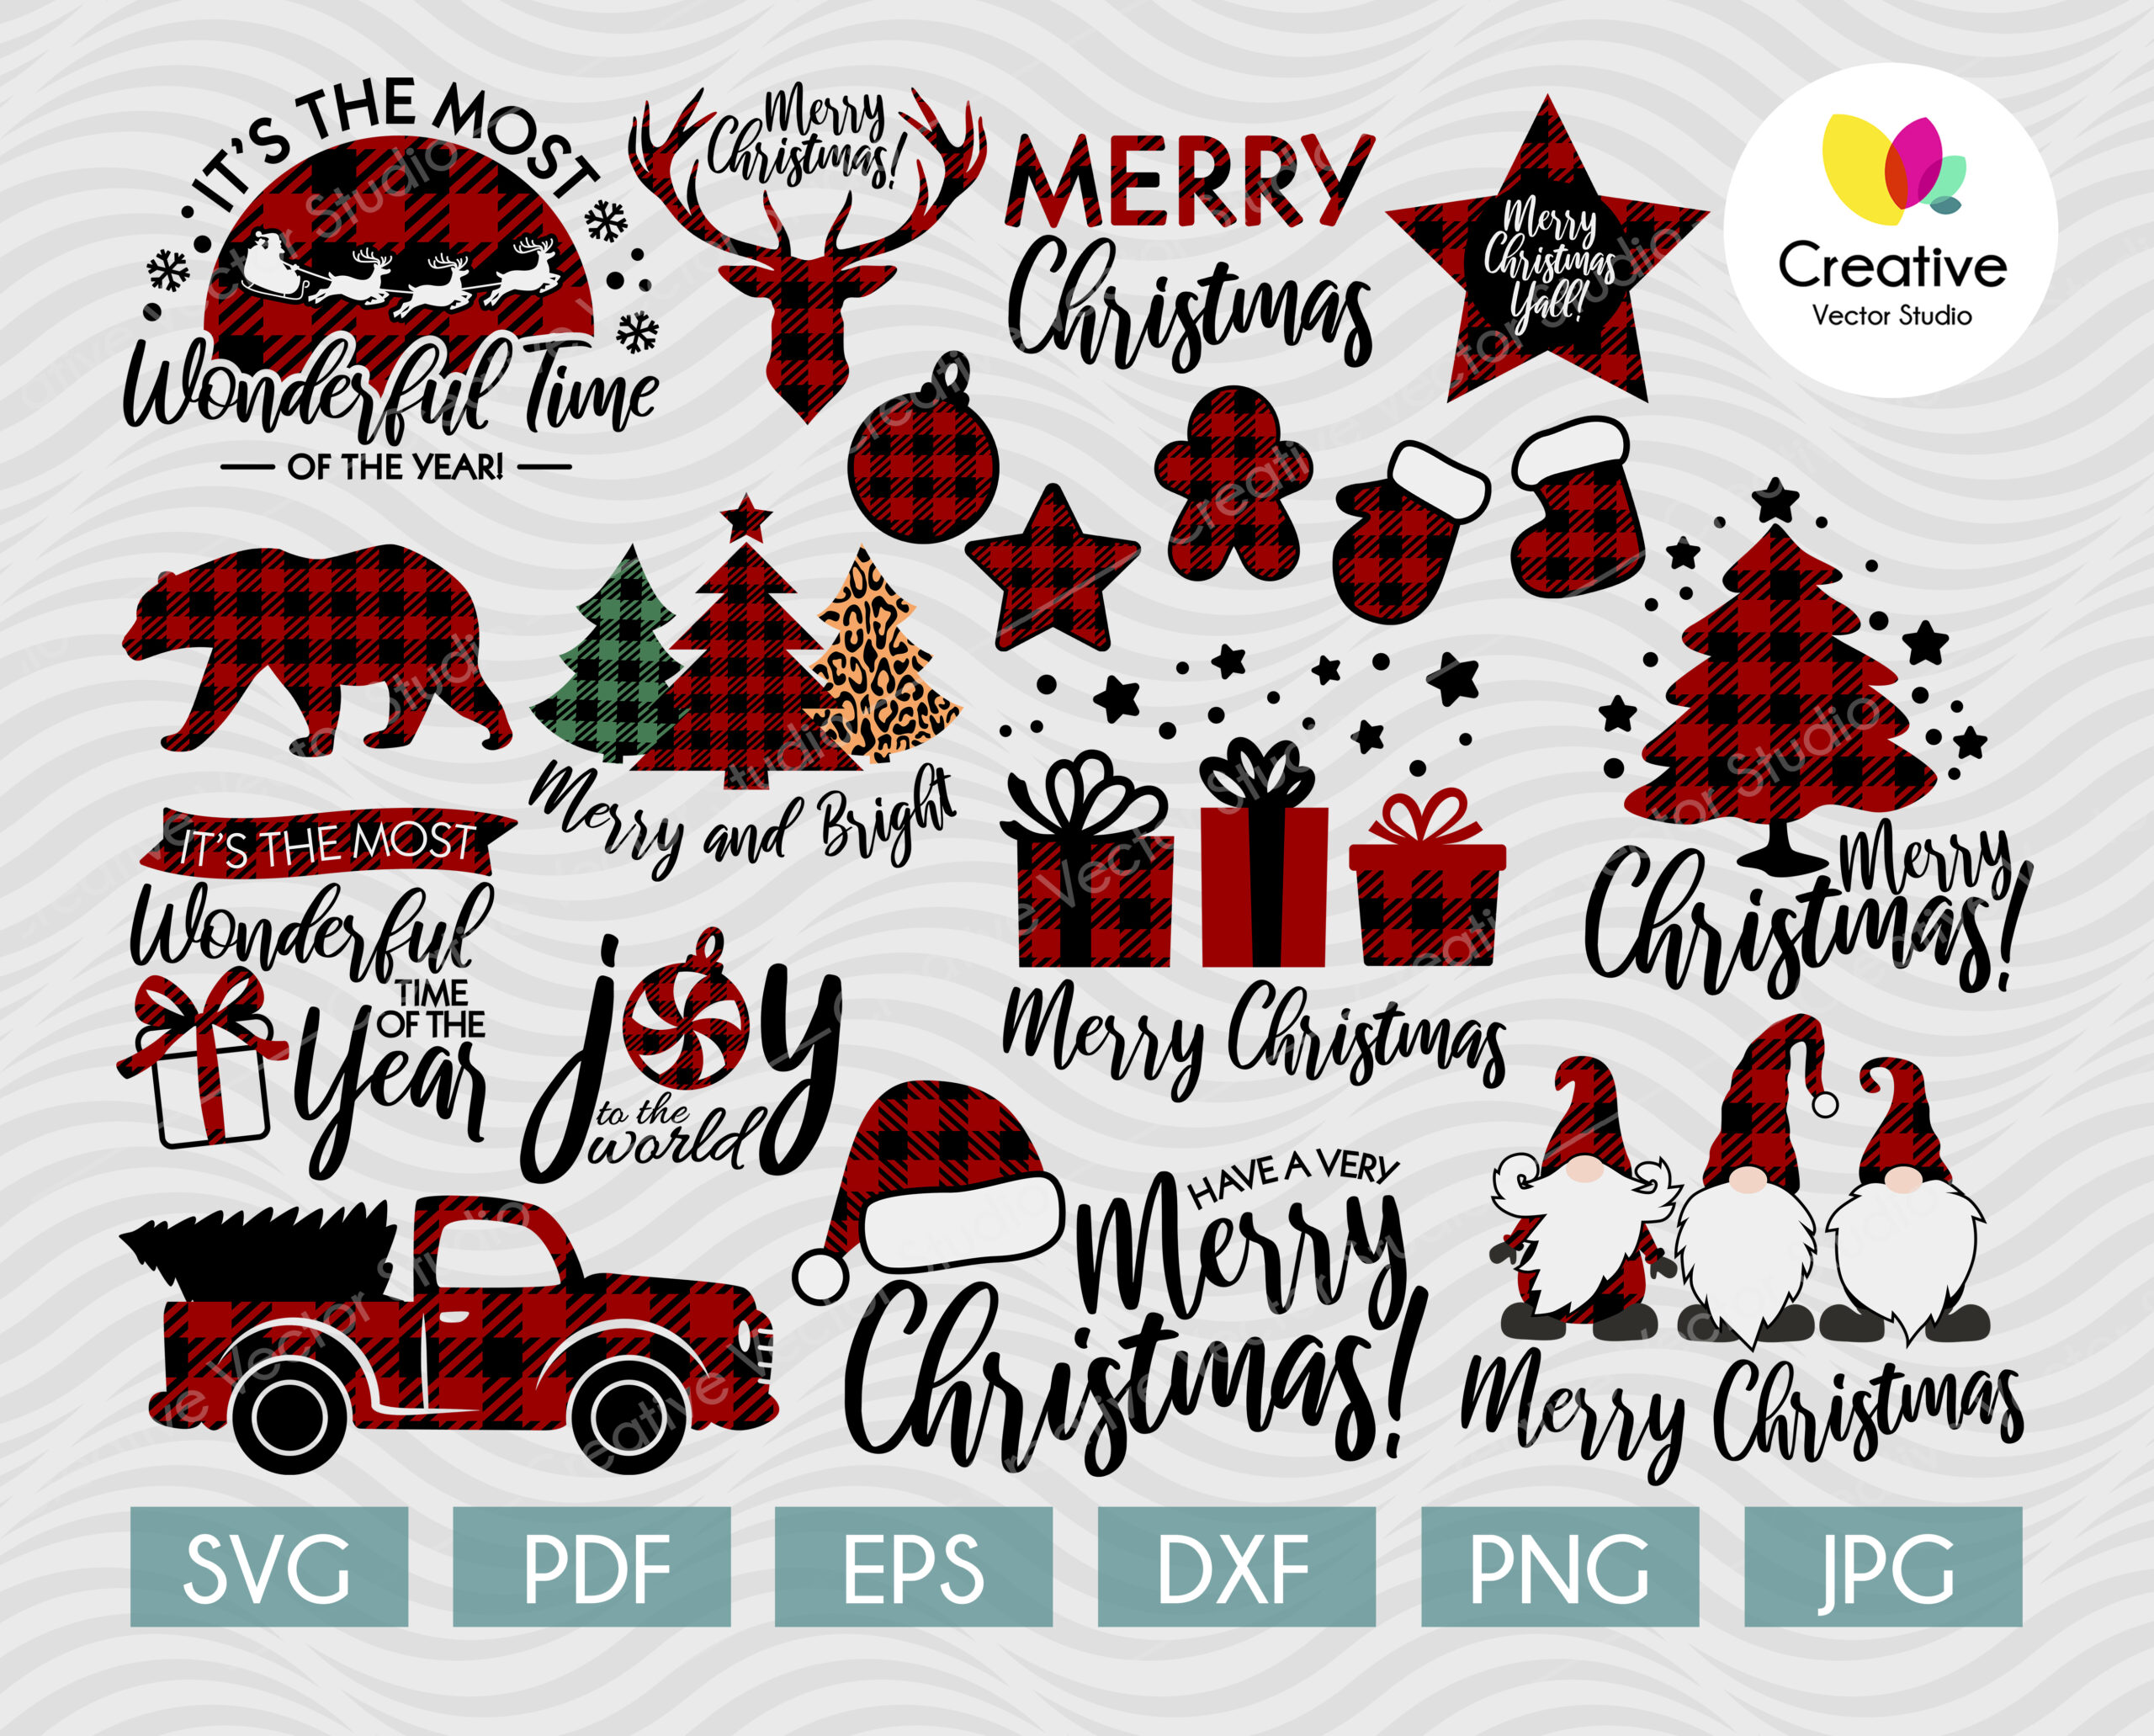 Buffalo Plaid Christmas SVG Bundle - Creative Vector Studio